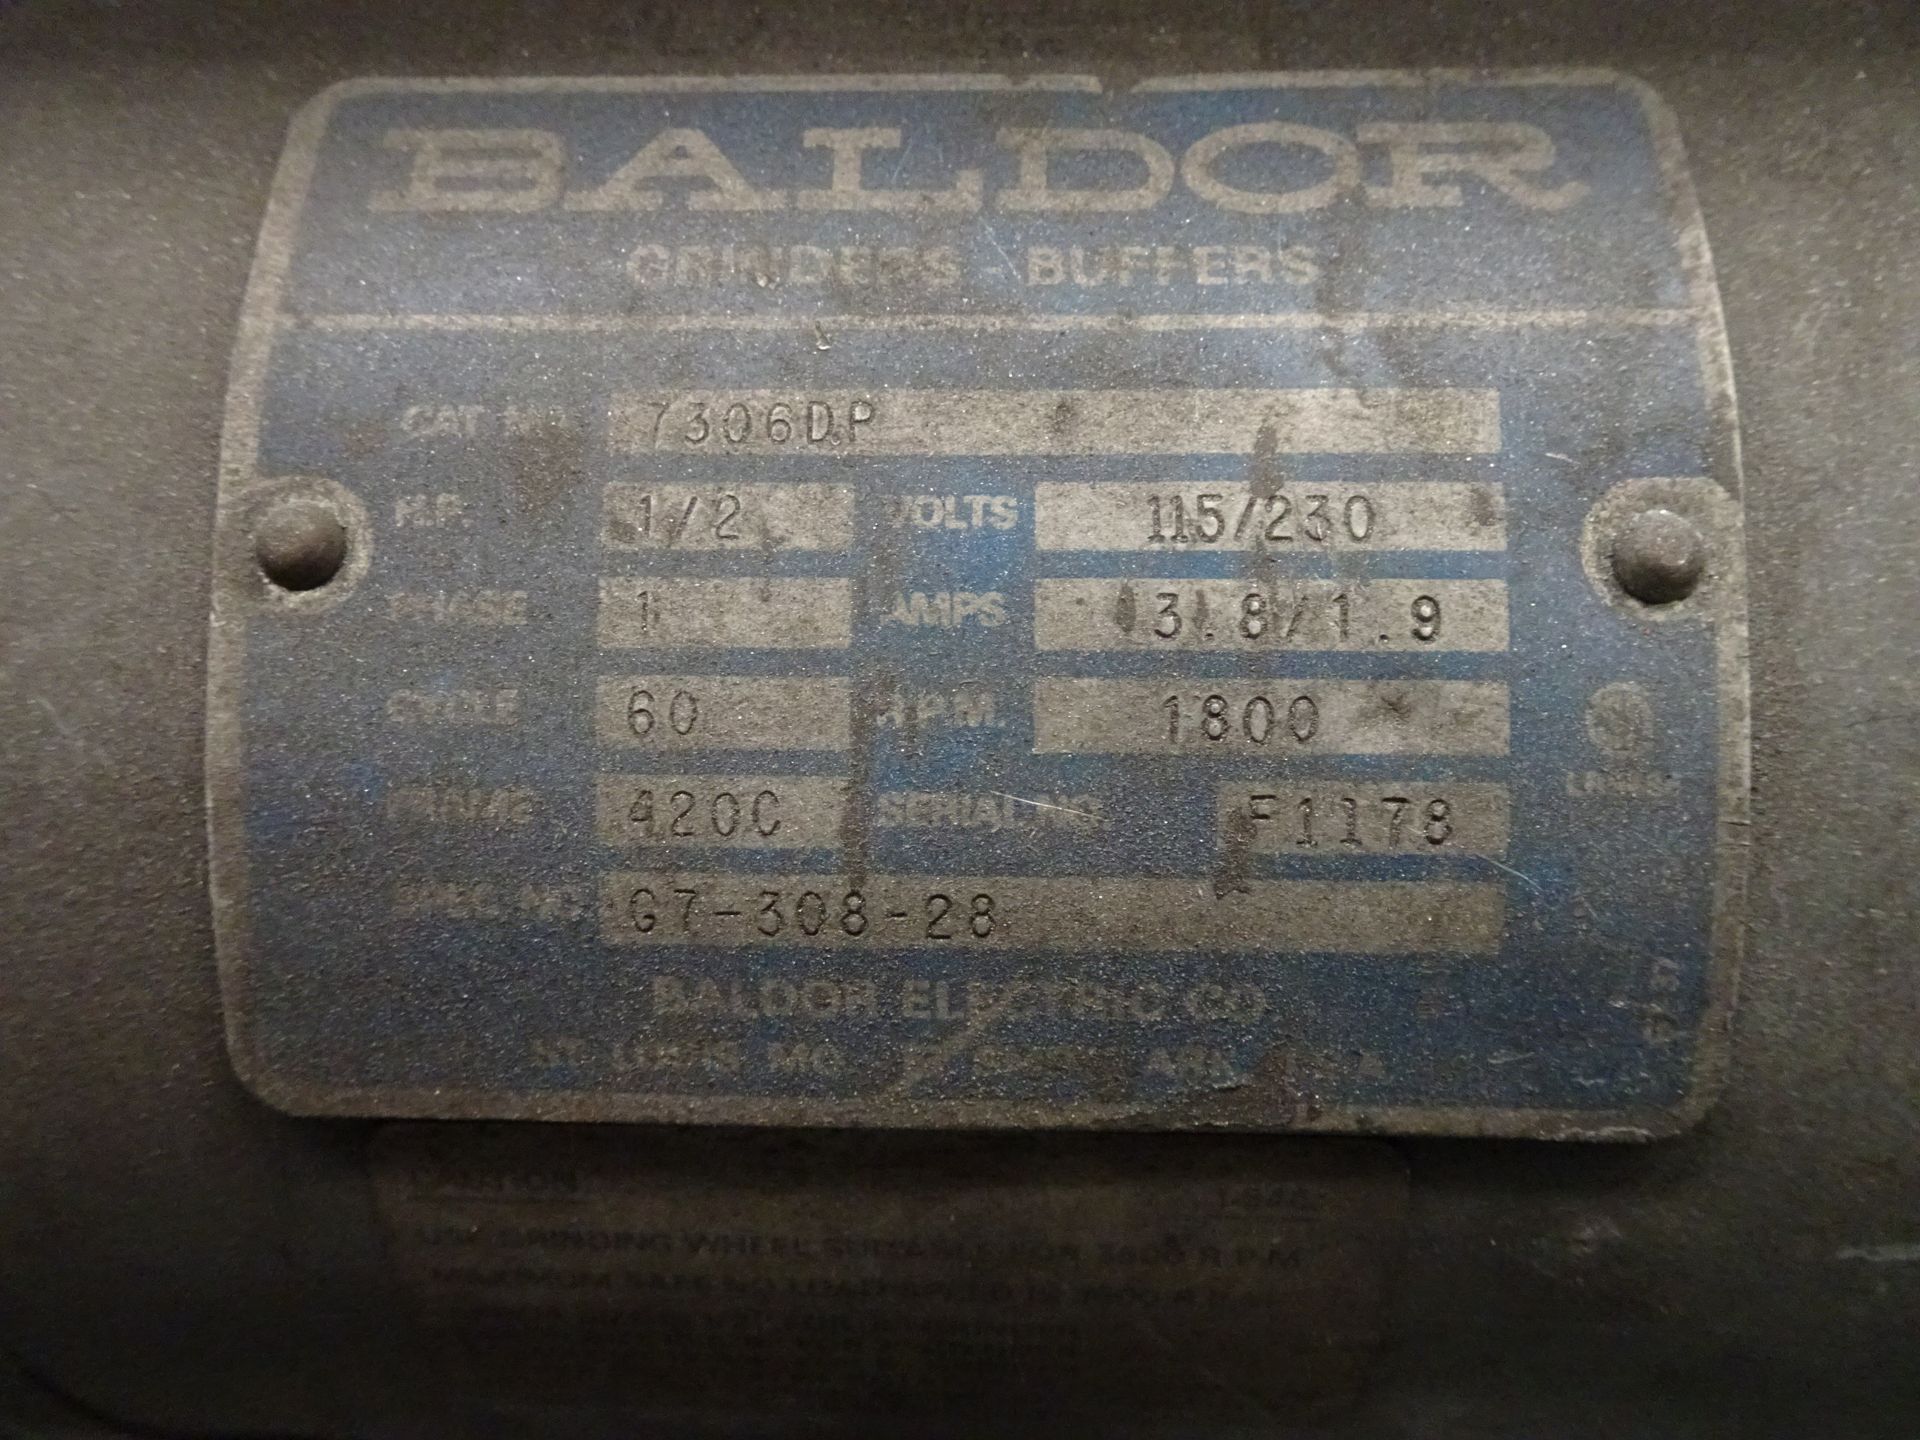 Baldor 7306DP 1/2 HP Double Ended Grinder 115/230 v, 1 ph, 60 Hz - Image 2 of 2